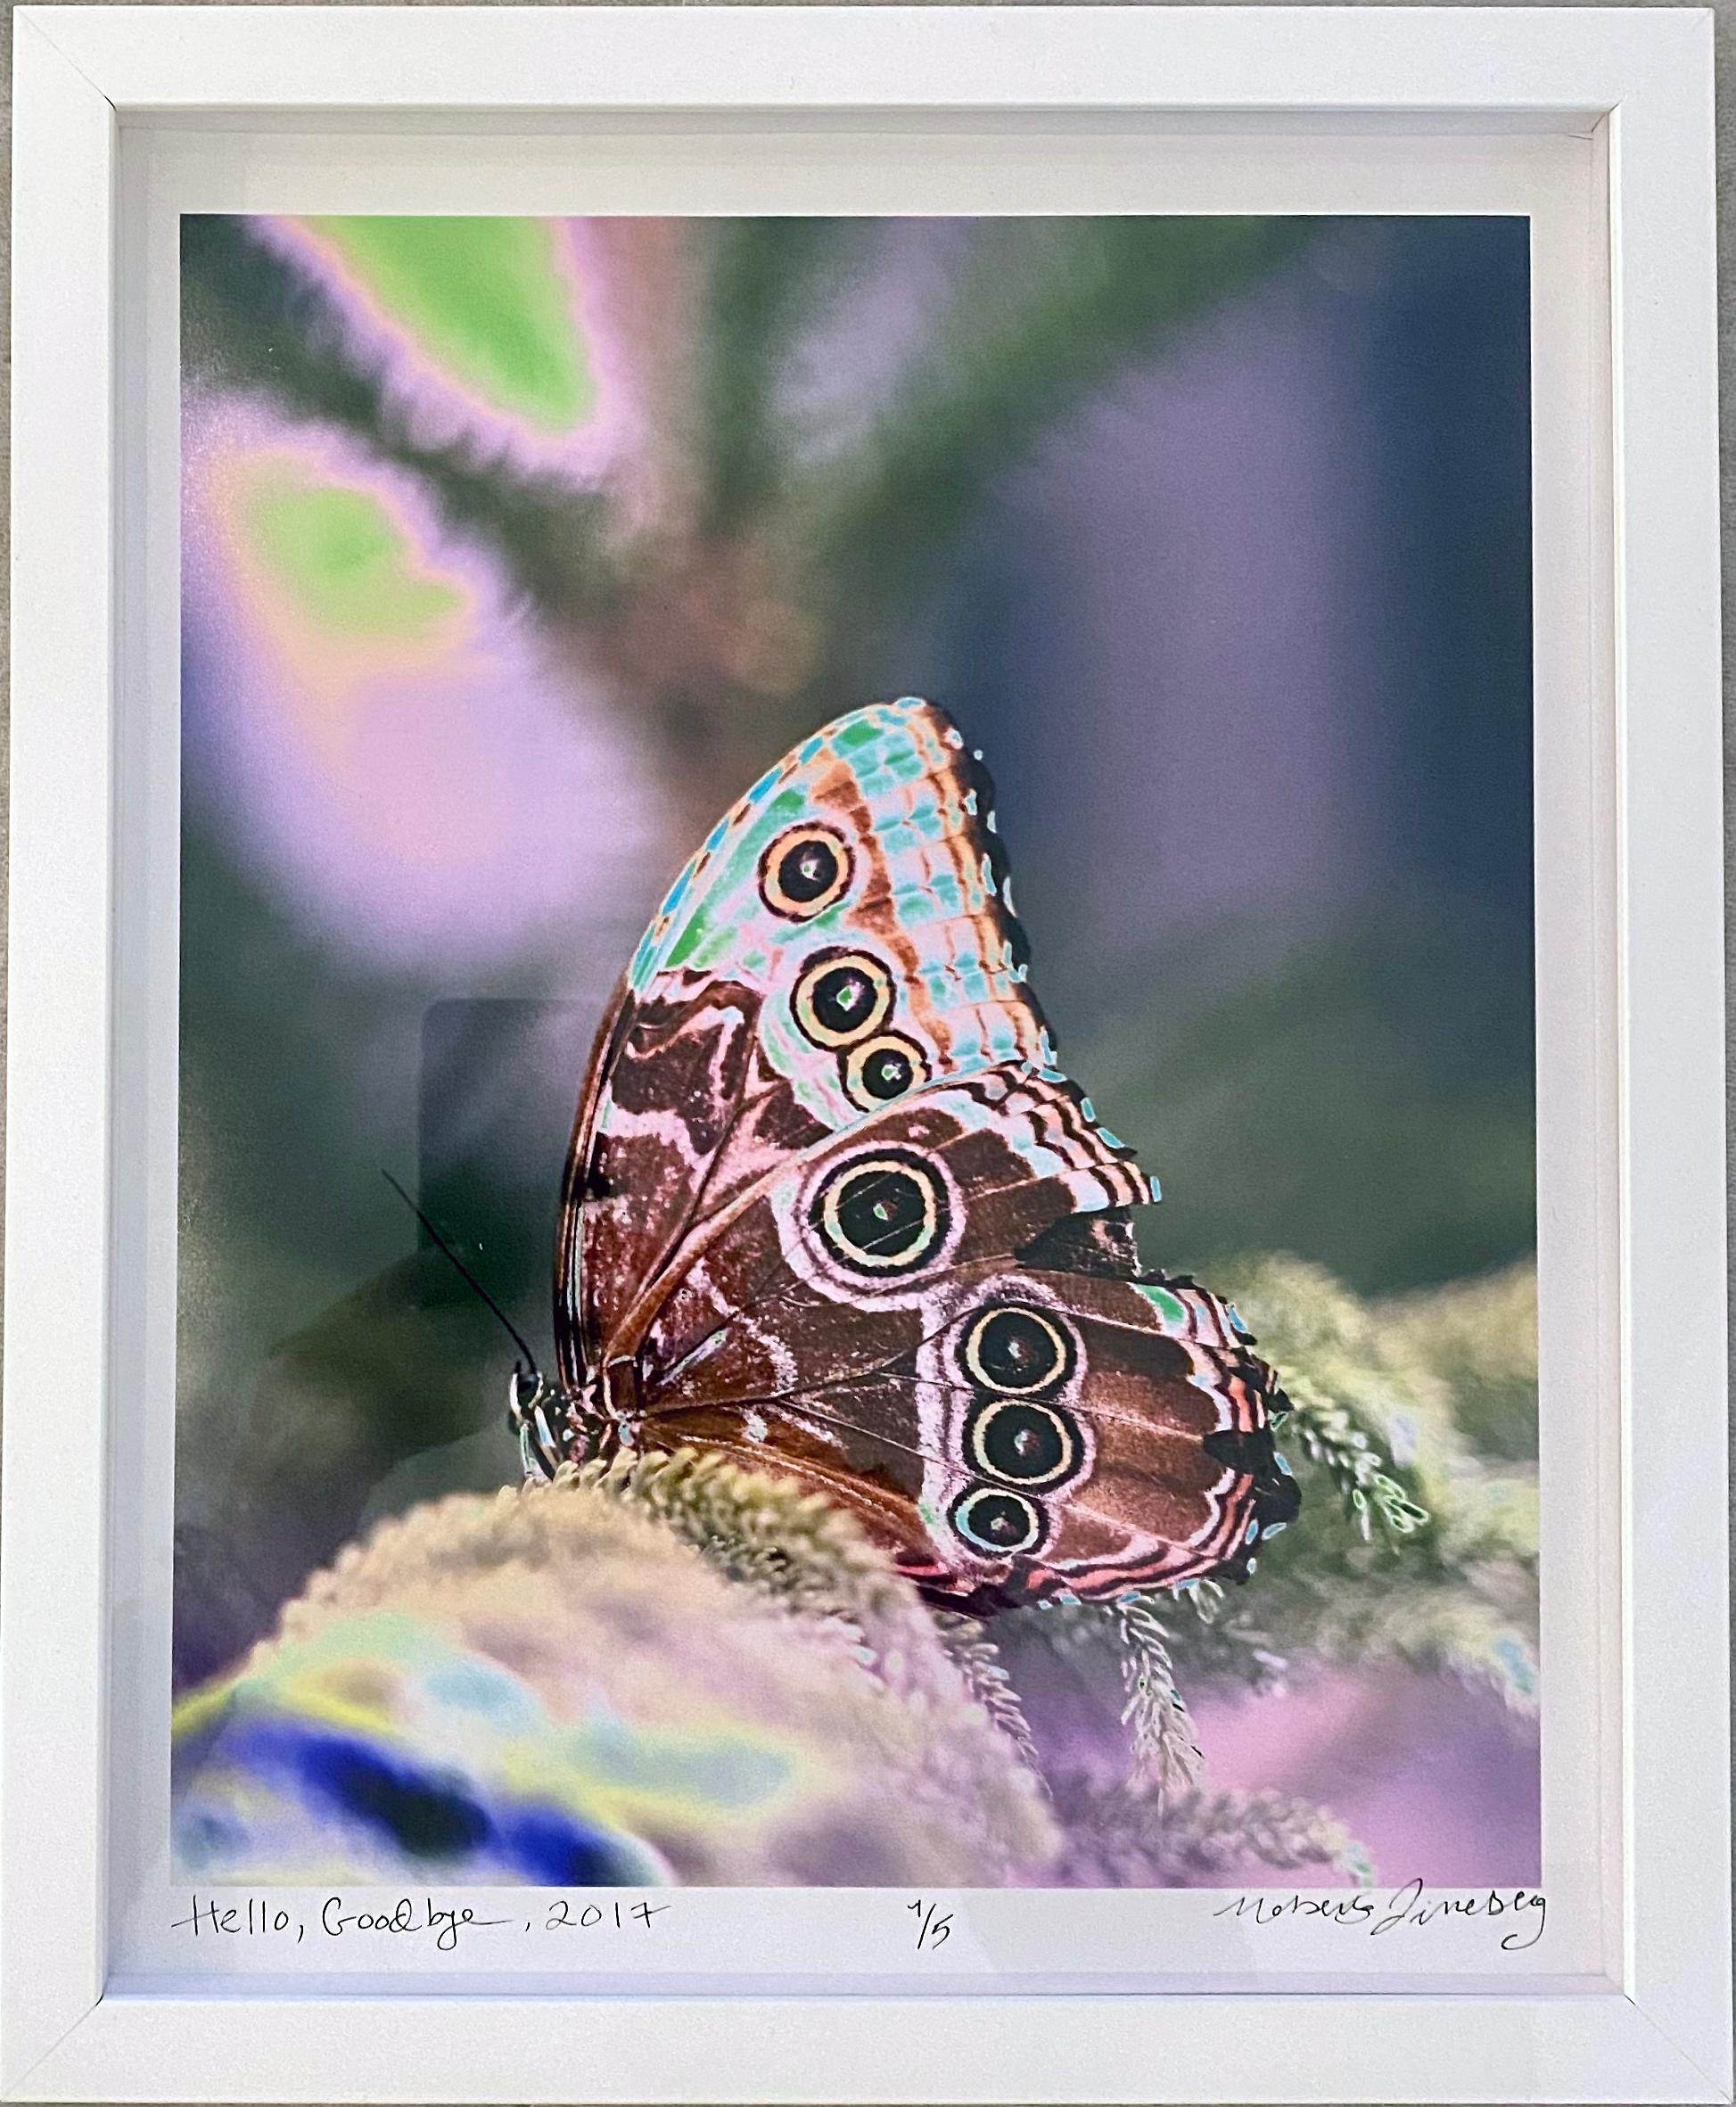 Von der Verwandlung bis zur Vergänglichkeit - die Geburt und der Tod eines Schmetterlings werden in einer Fotoserie von Roberta Fineberg neu inszeniert, die von der Poesie des persischen Dichters Rumi aus dem 13. Jahrhundert inspiriert ist, der